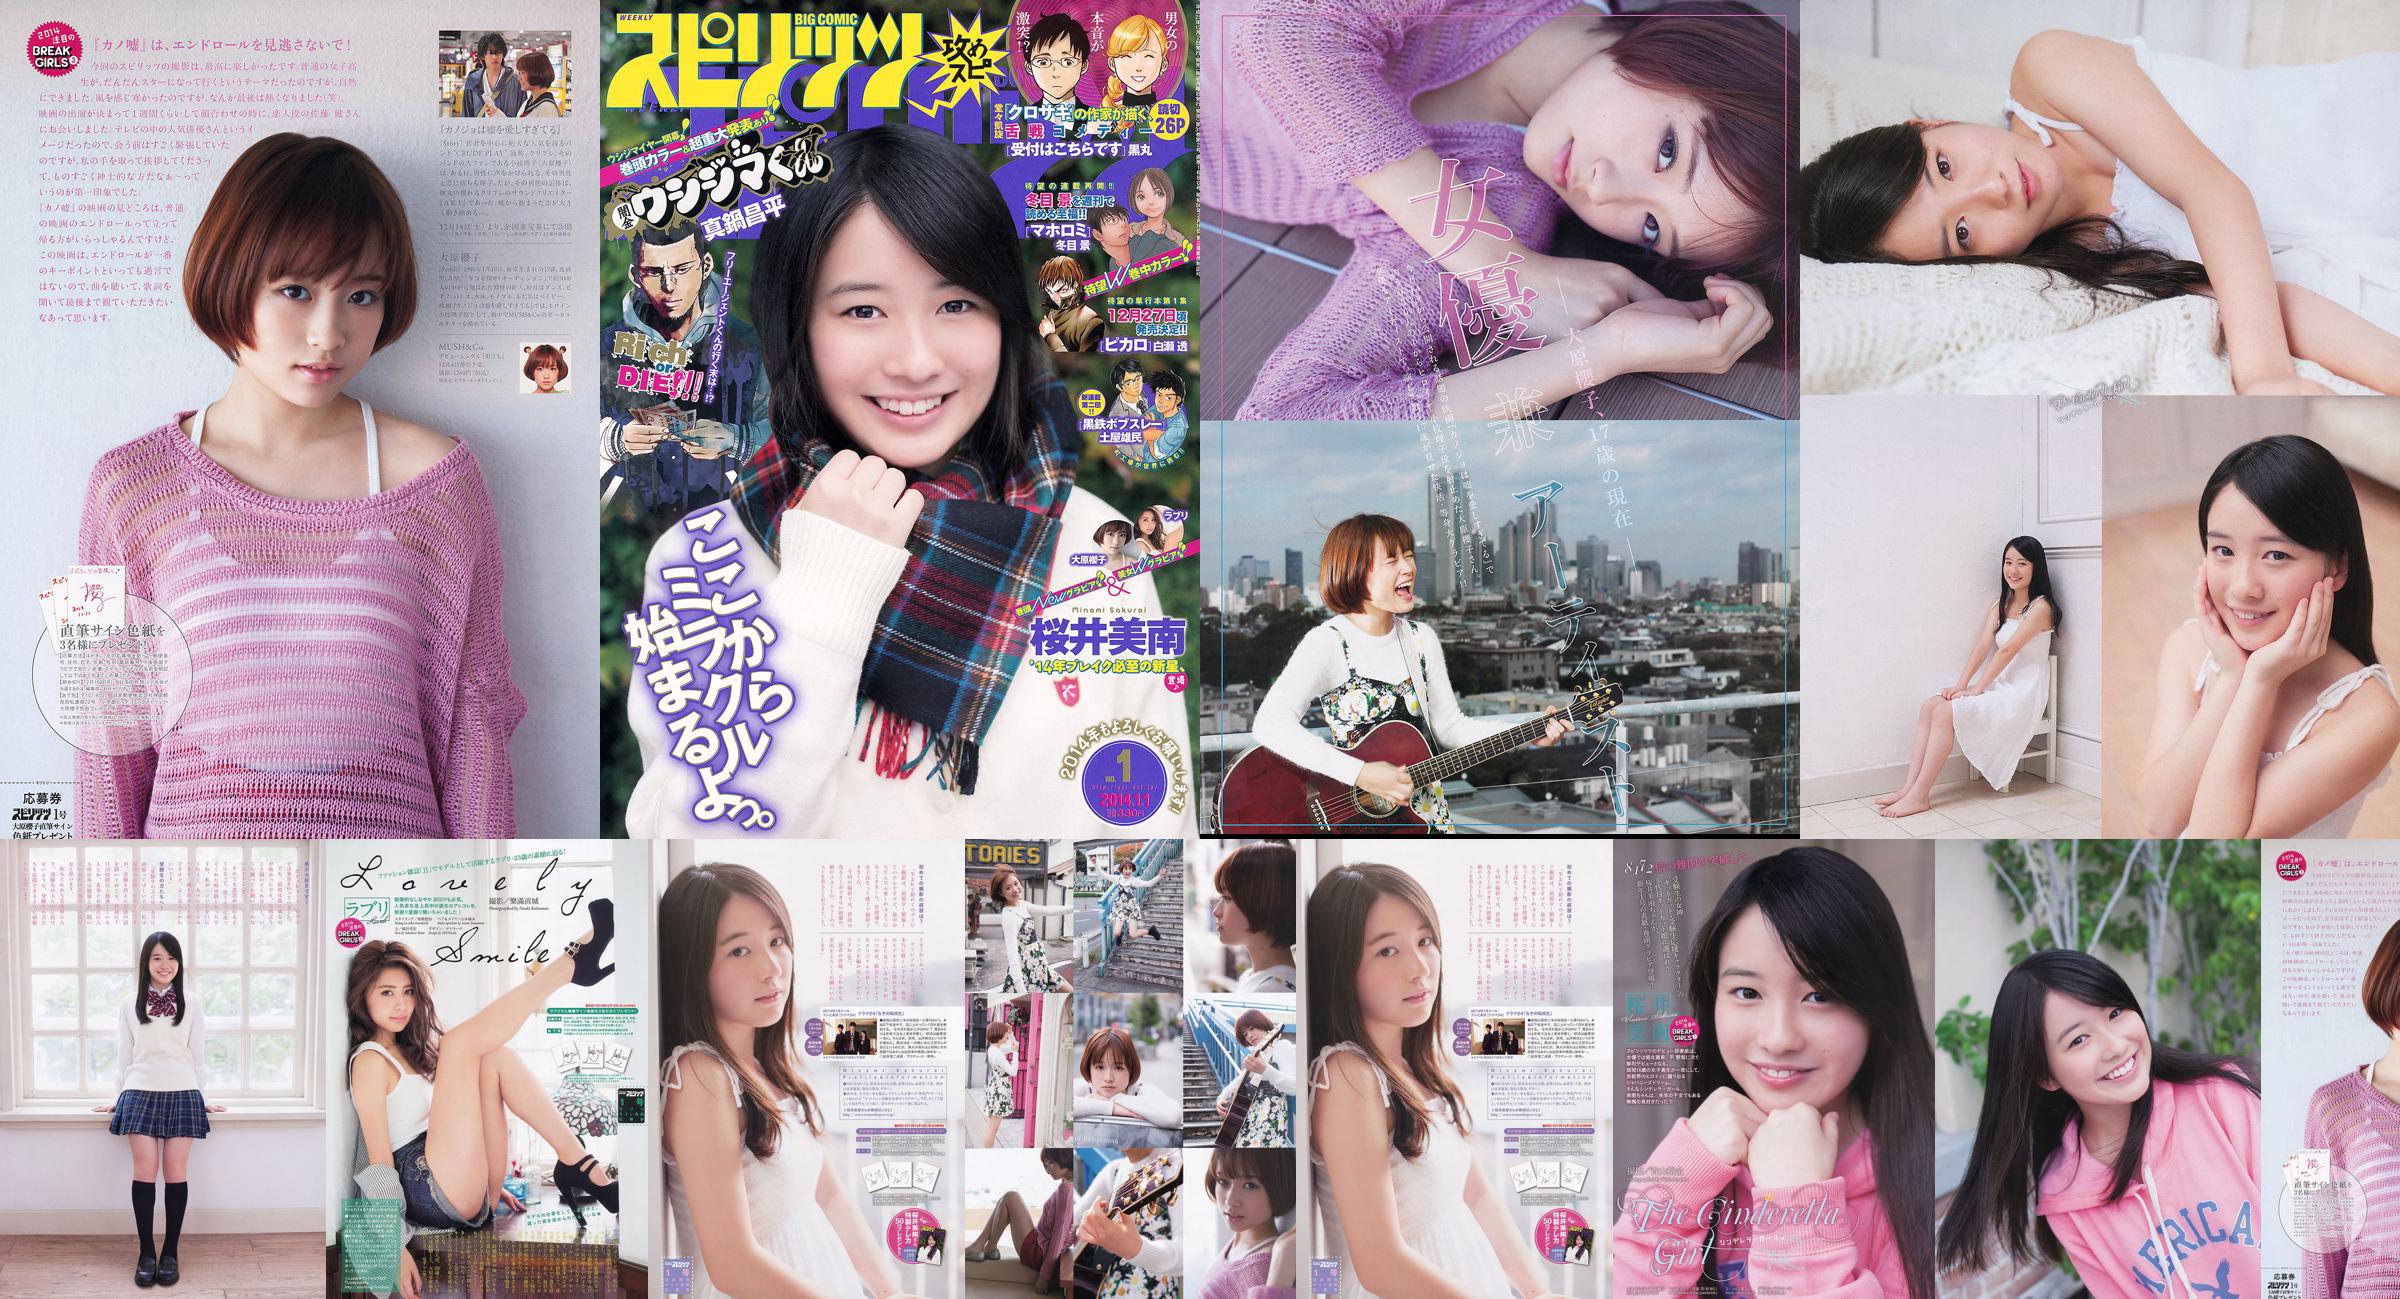 [Wöchentliche große Comic-Geister] Sakurai Minan Ohara Sakurako 2014 No.01 Photo Magazine No.fa3701 Seite 1